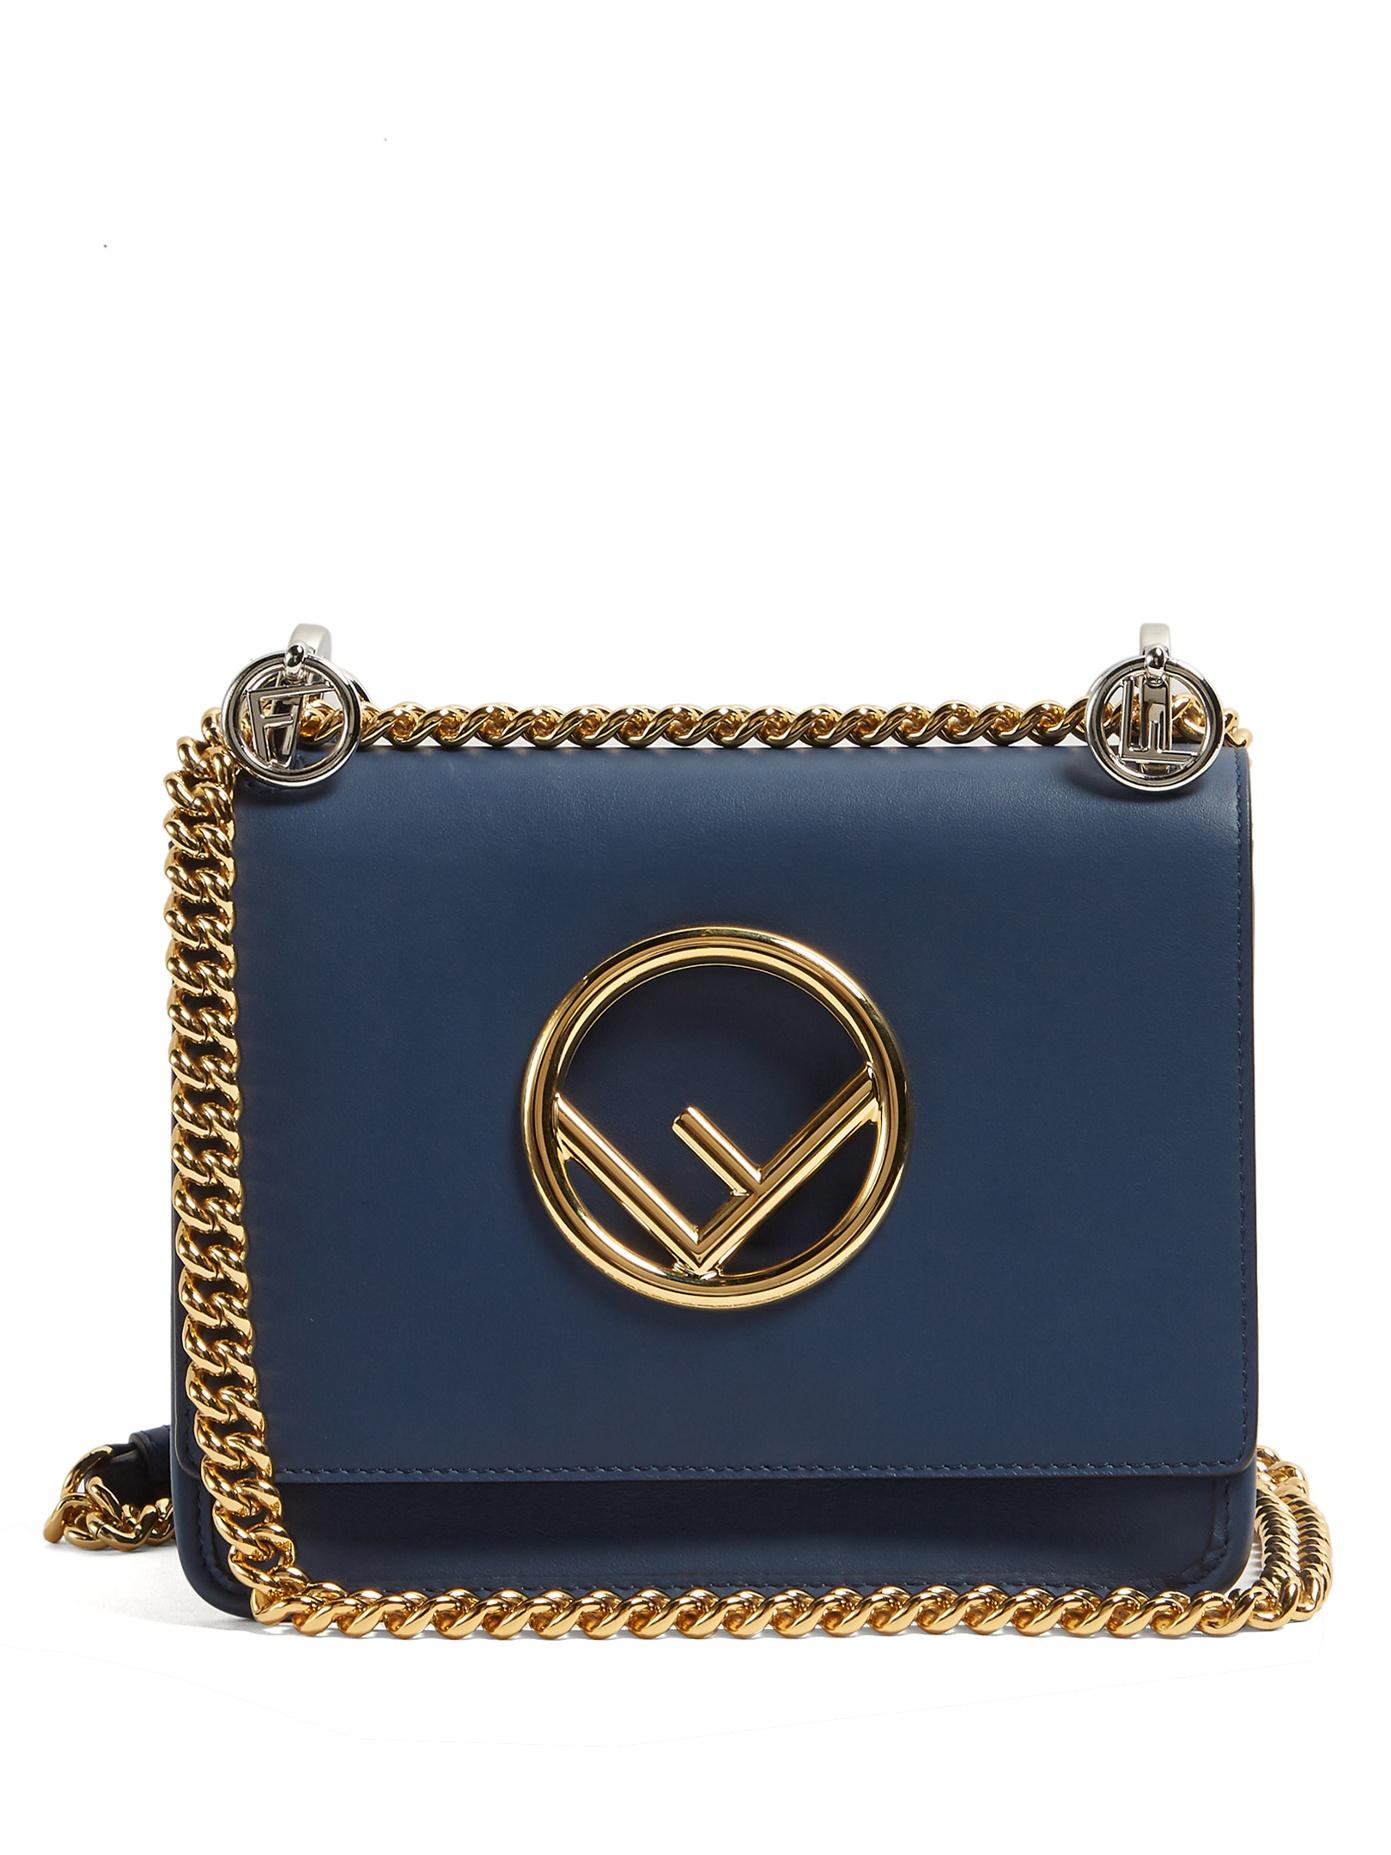 Fendi Kan I Logo Small Leather Cross-body Bag In Dark Blue | ModeSens